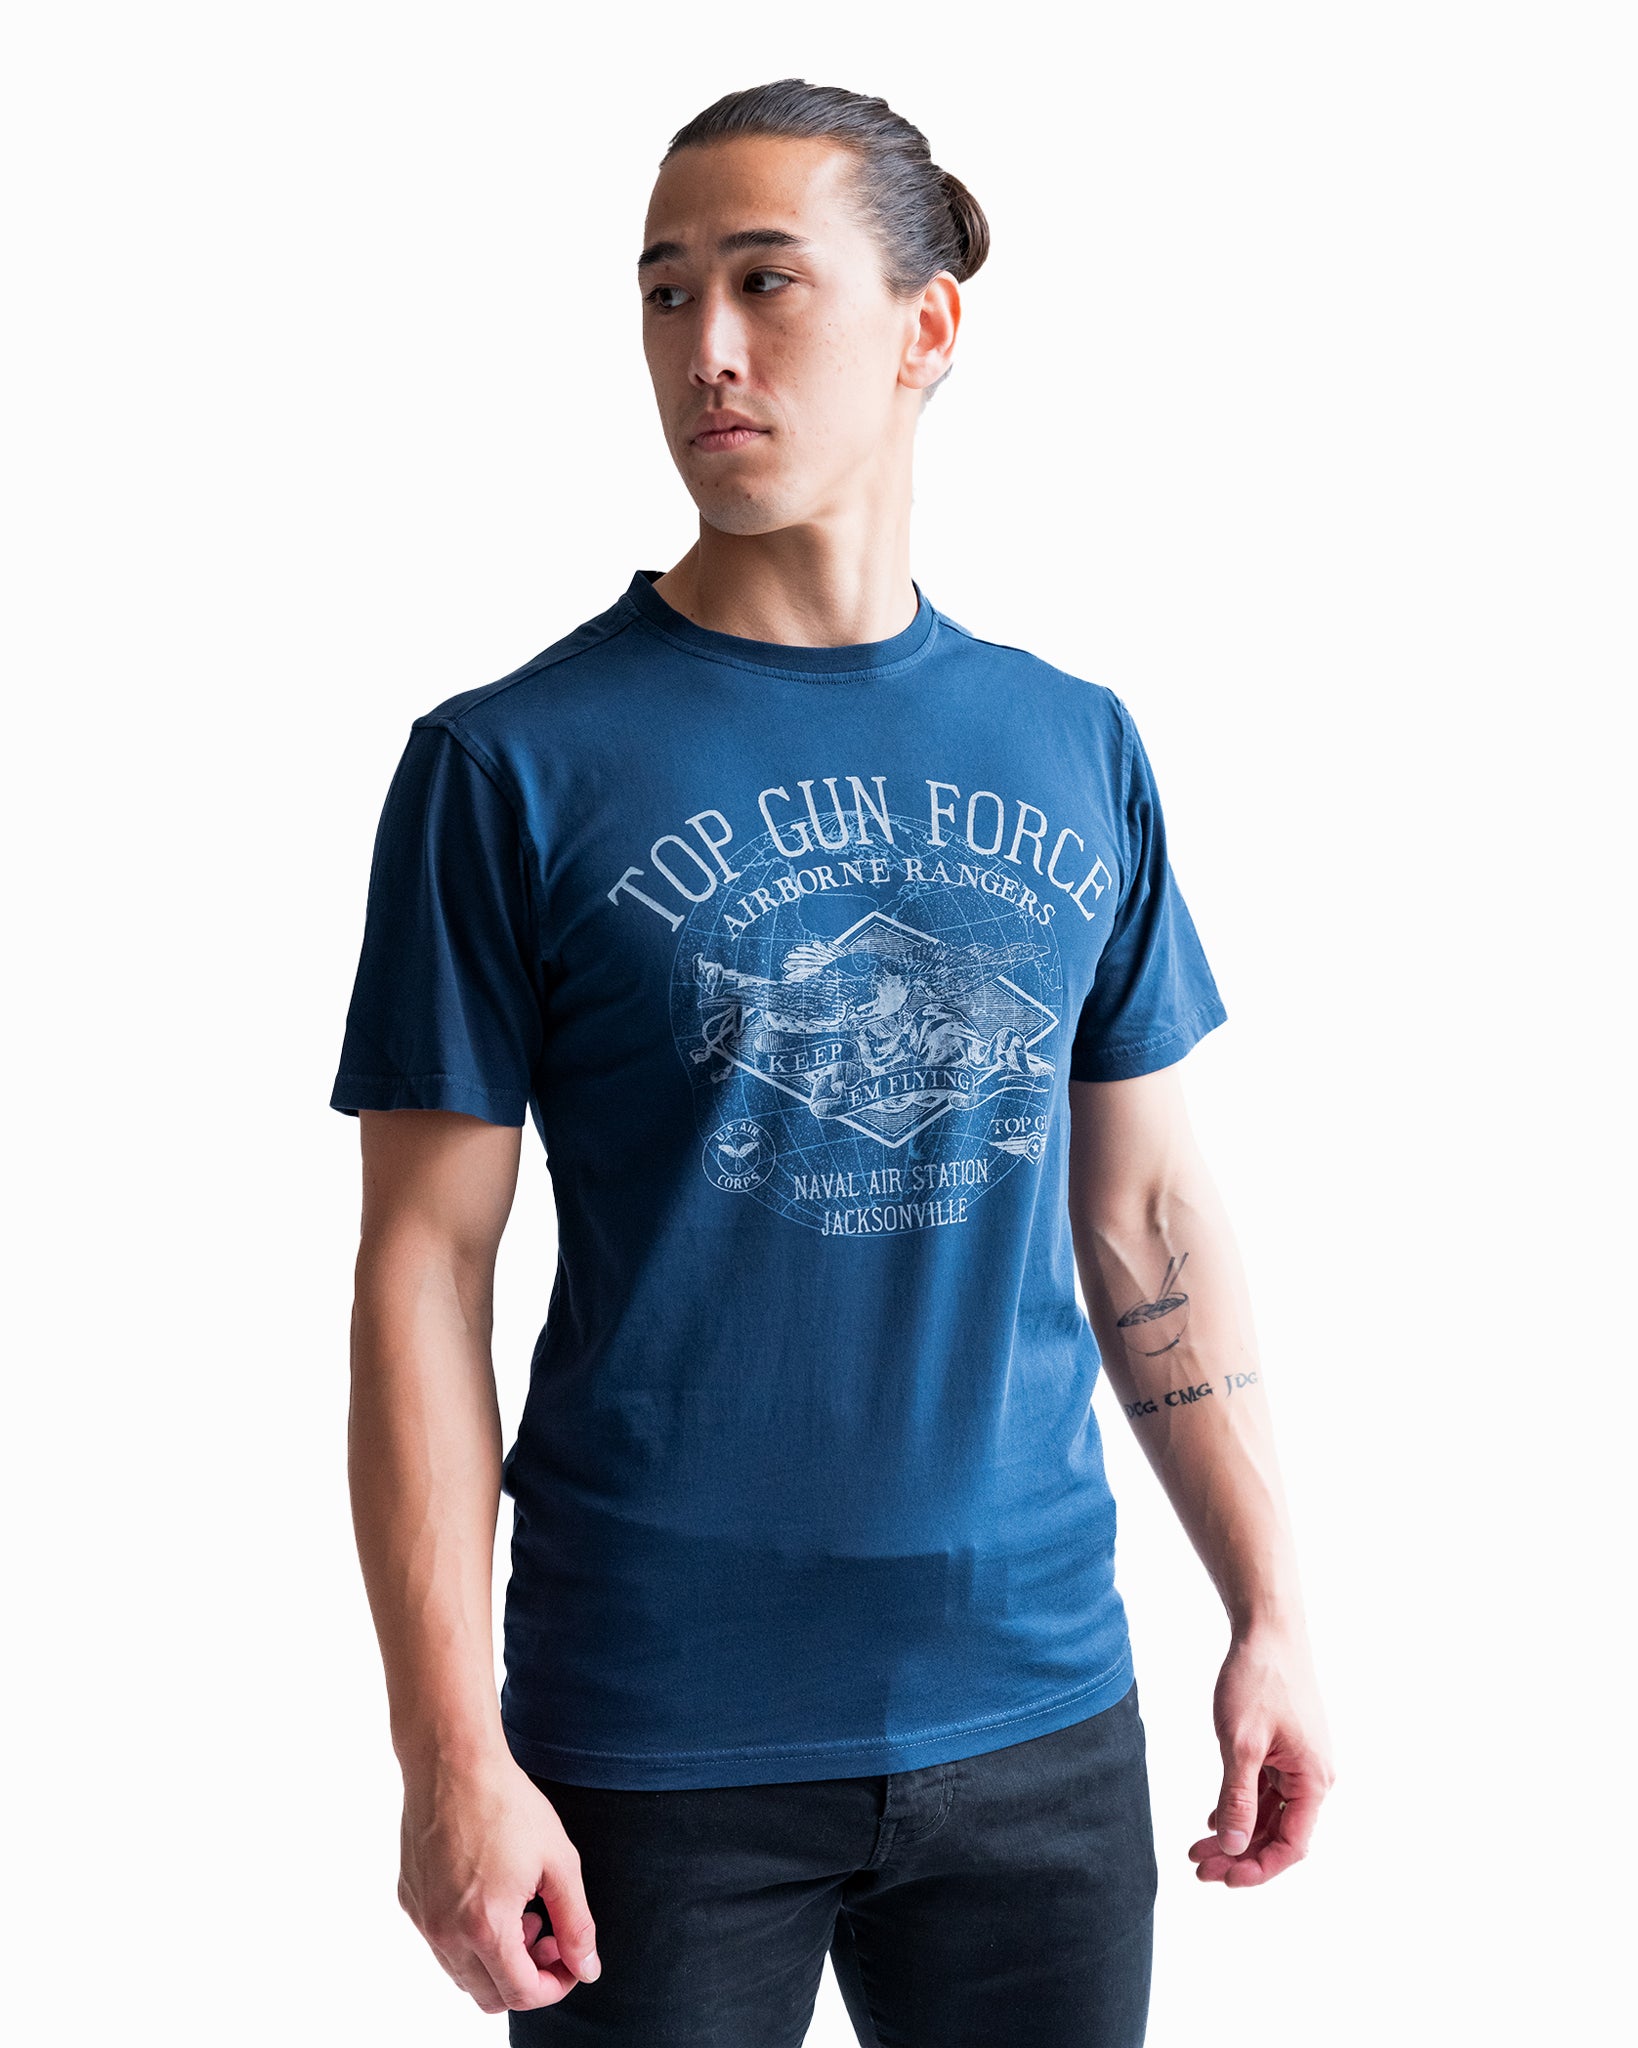 – T-Shirts, | Cotton gun & Best Summer STORE Tees, THE TOP Gun GUN Men\'s T-Shirts OFFICIAL Top Store merchandise, | Tees top movie Men\'s Tees